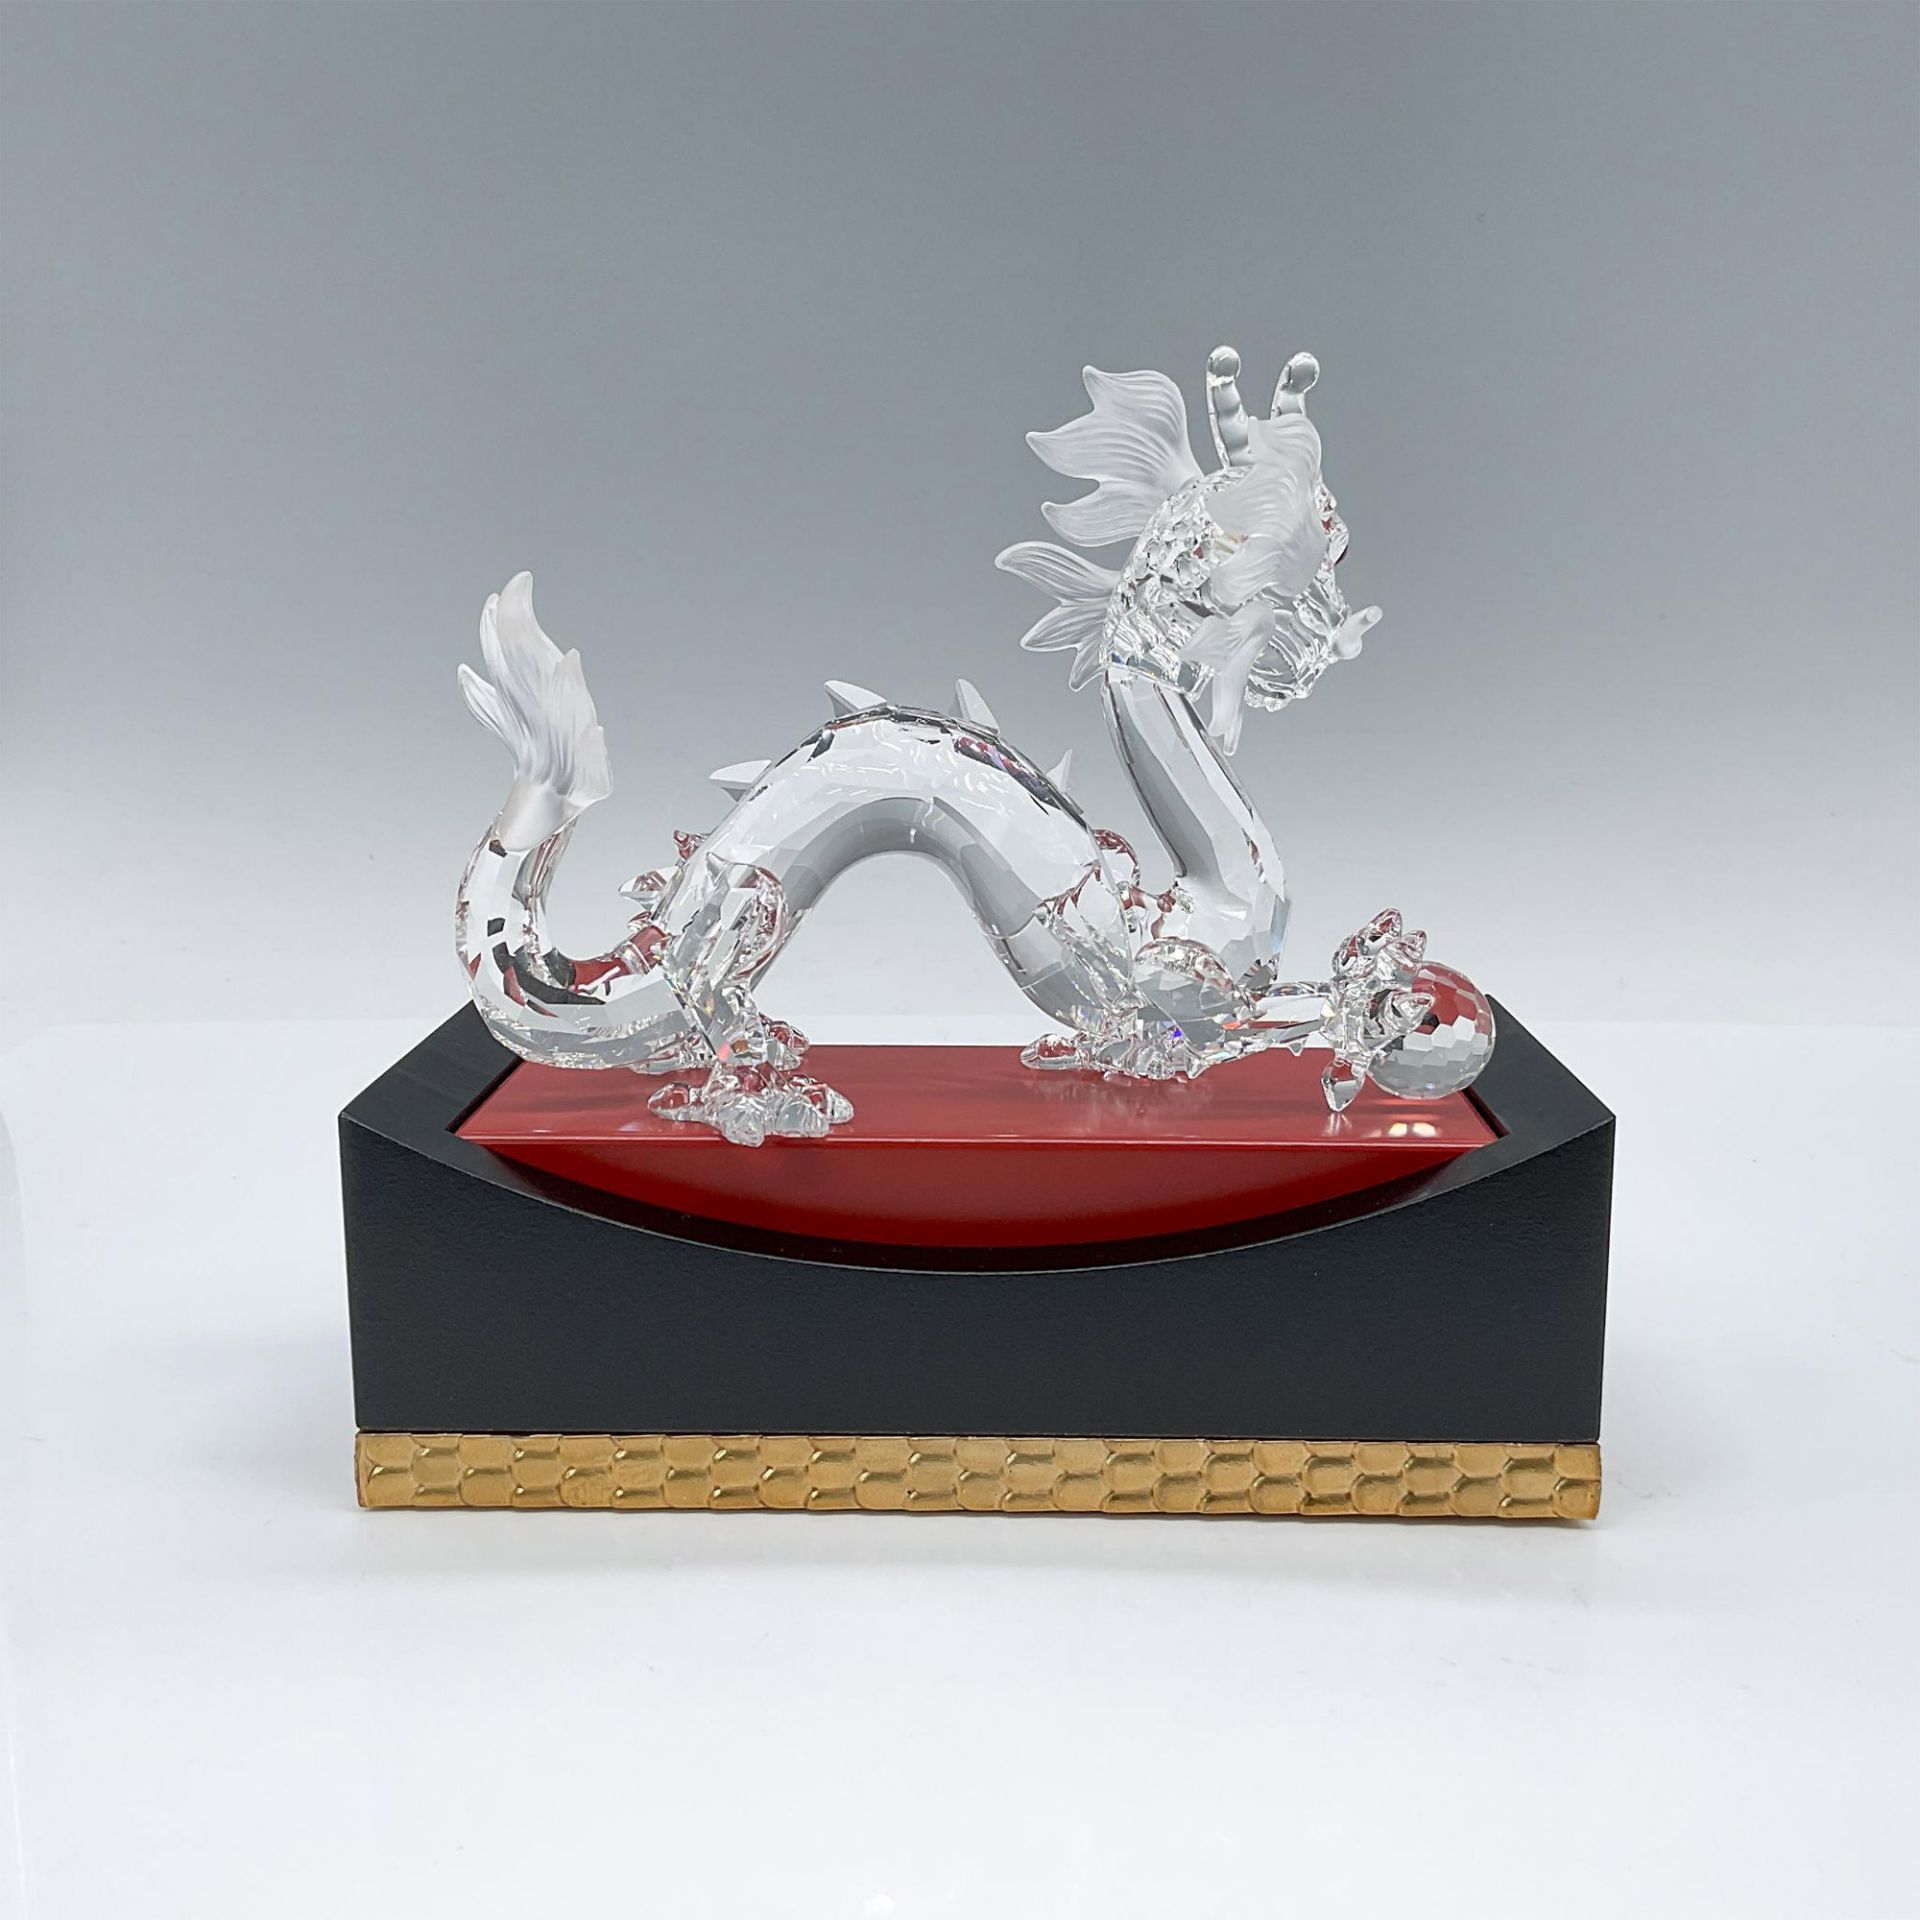 Swarovski Crystal Figurine, Zodiac Dragon with Base - Image 2 of 4